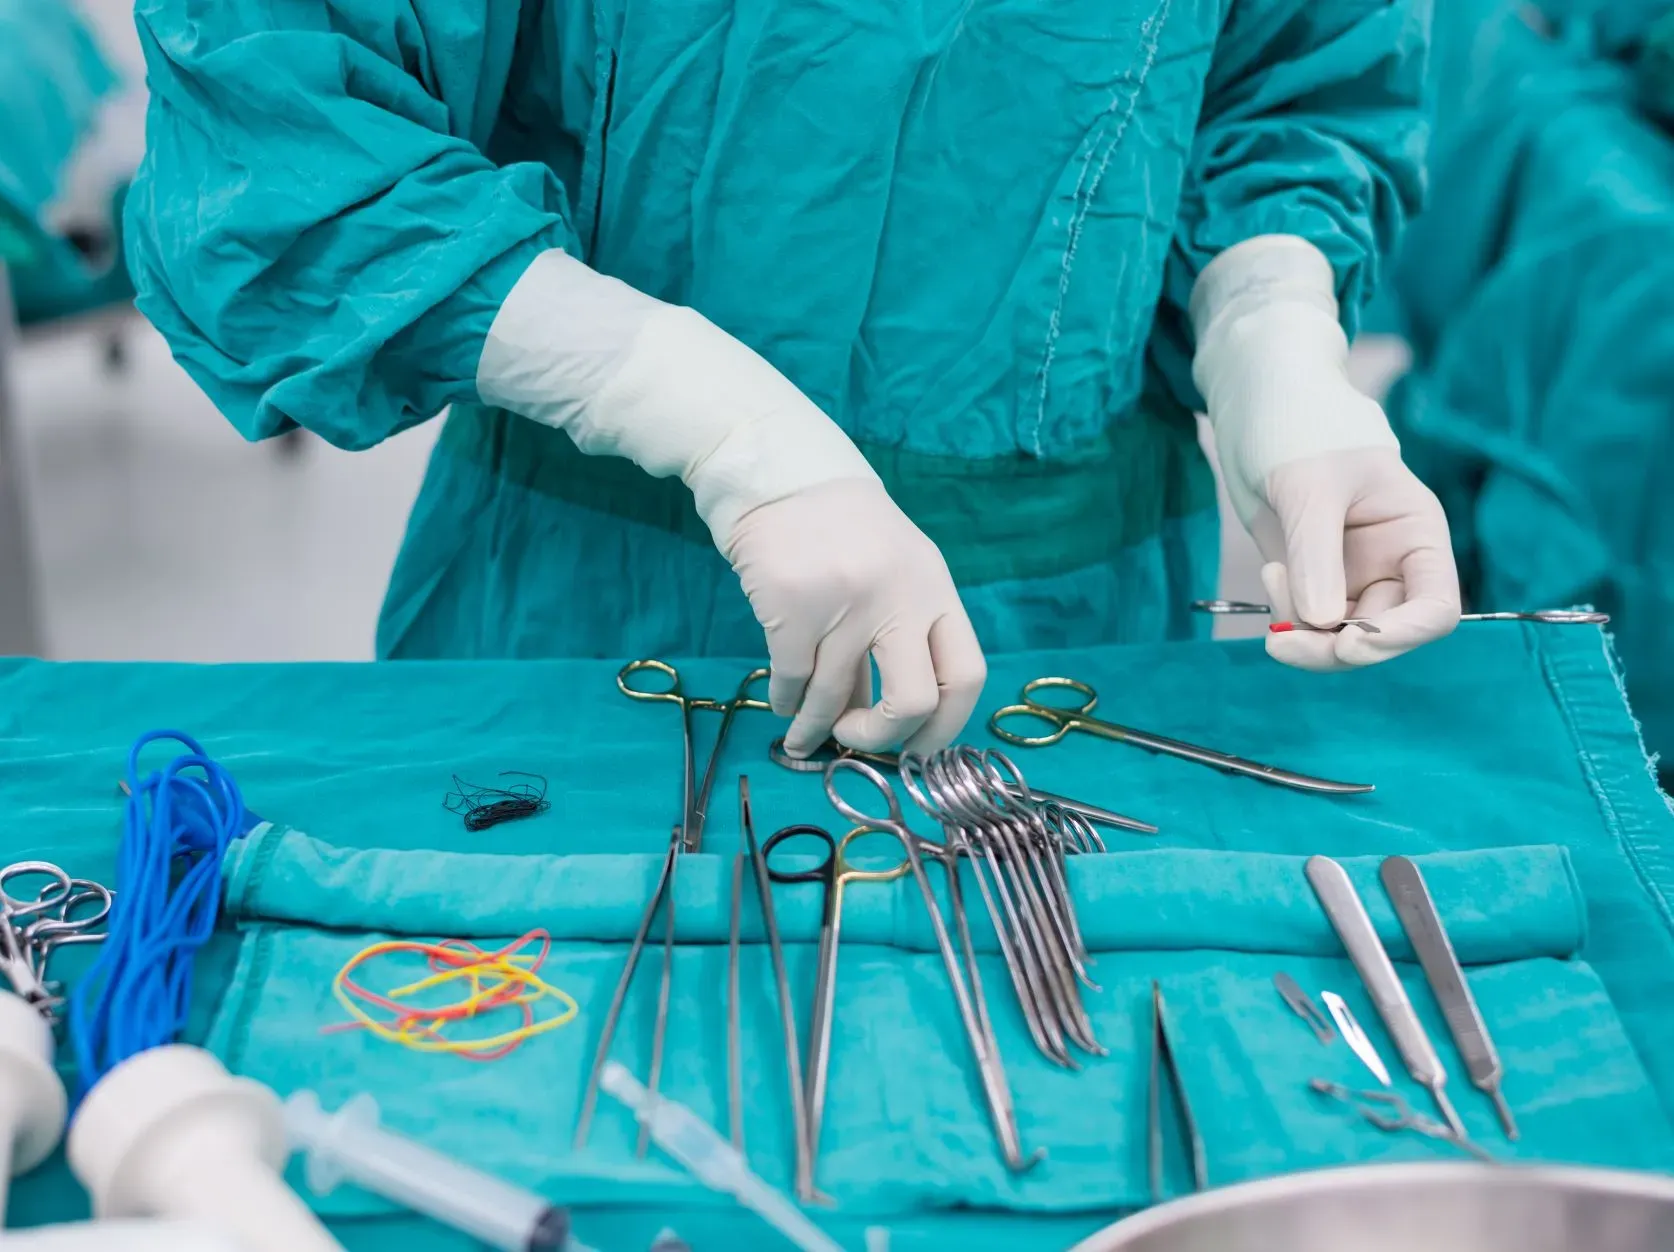 operacja z uzyciem narzedzi chirurgicznych, pielegniarka operacyjna